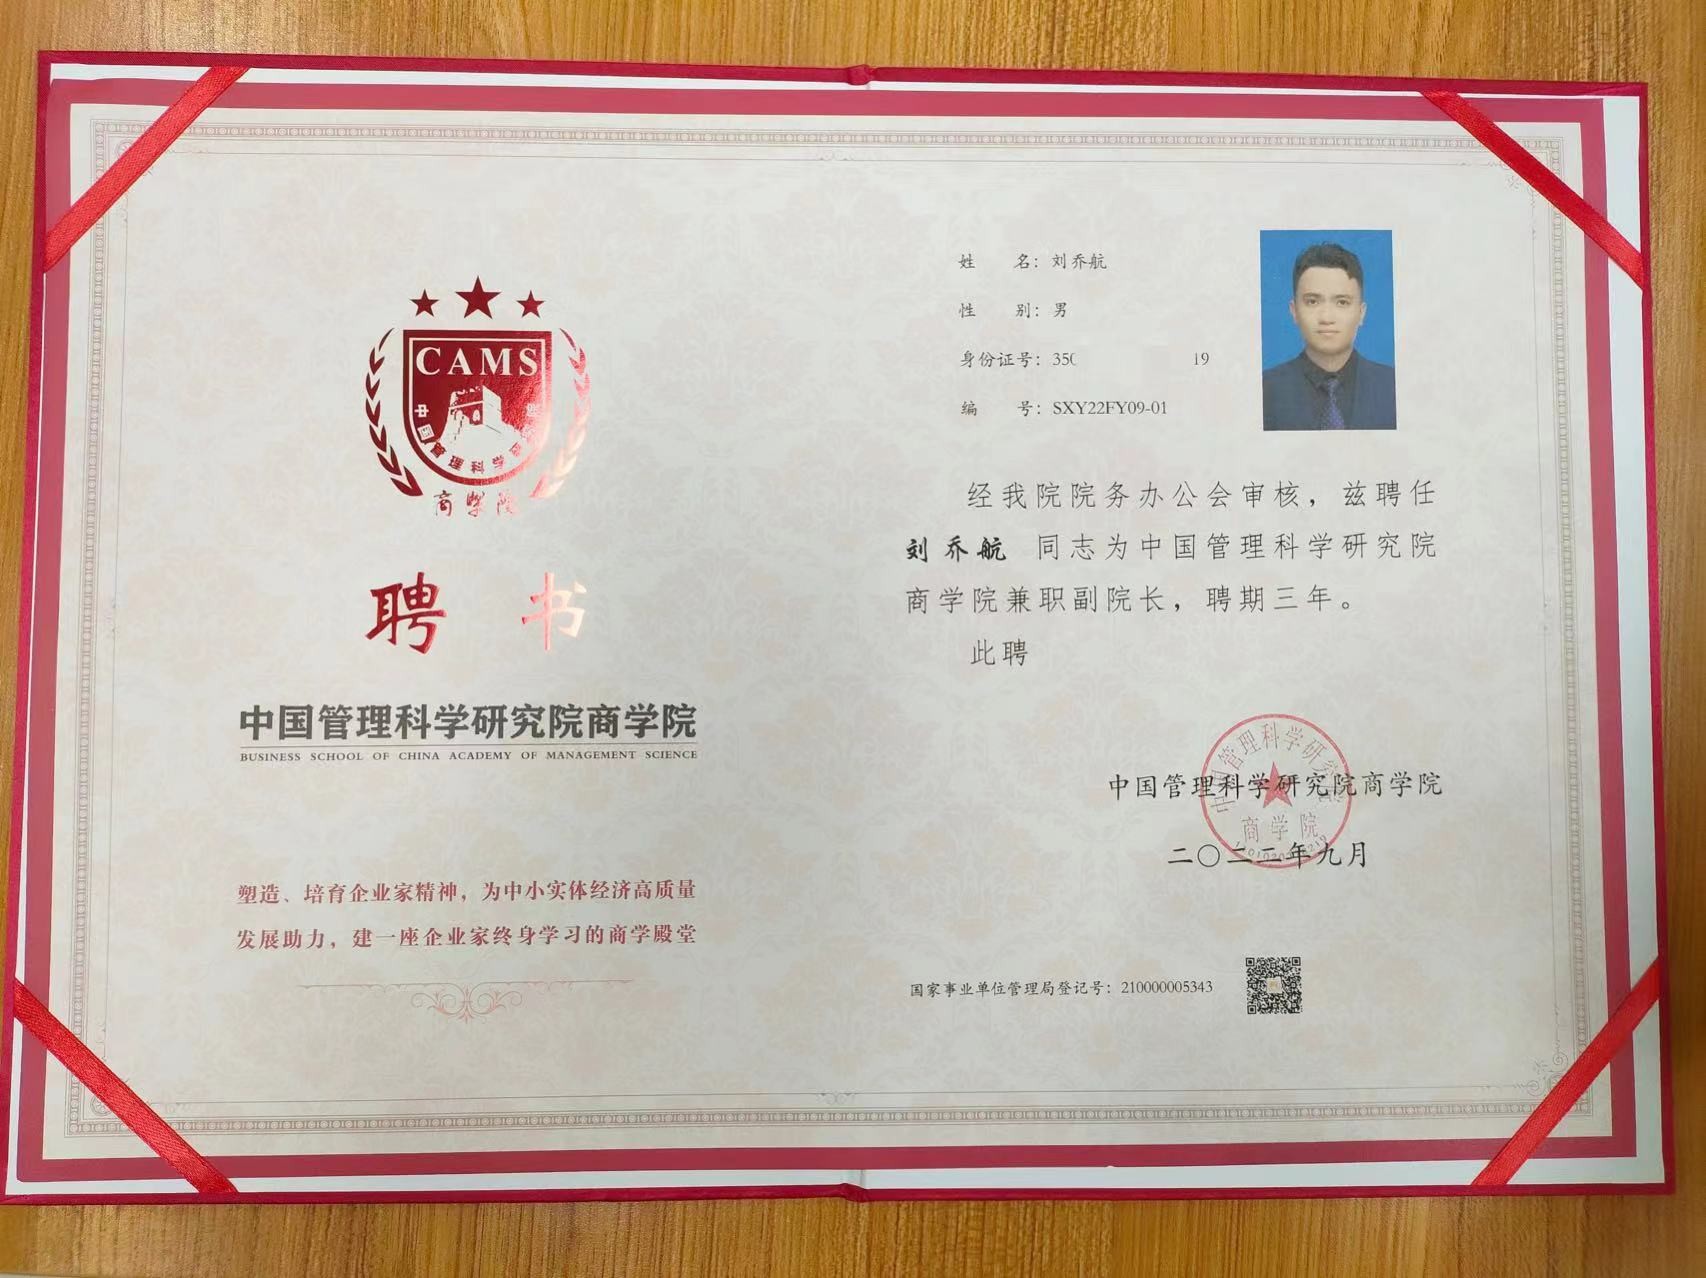 刘乔航先生受聘为中国管理科学研究院商学院最年轻副院长